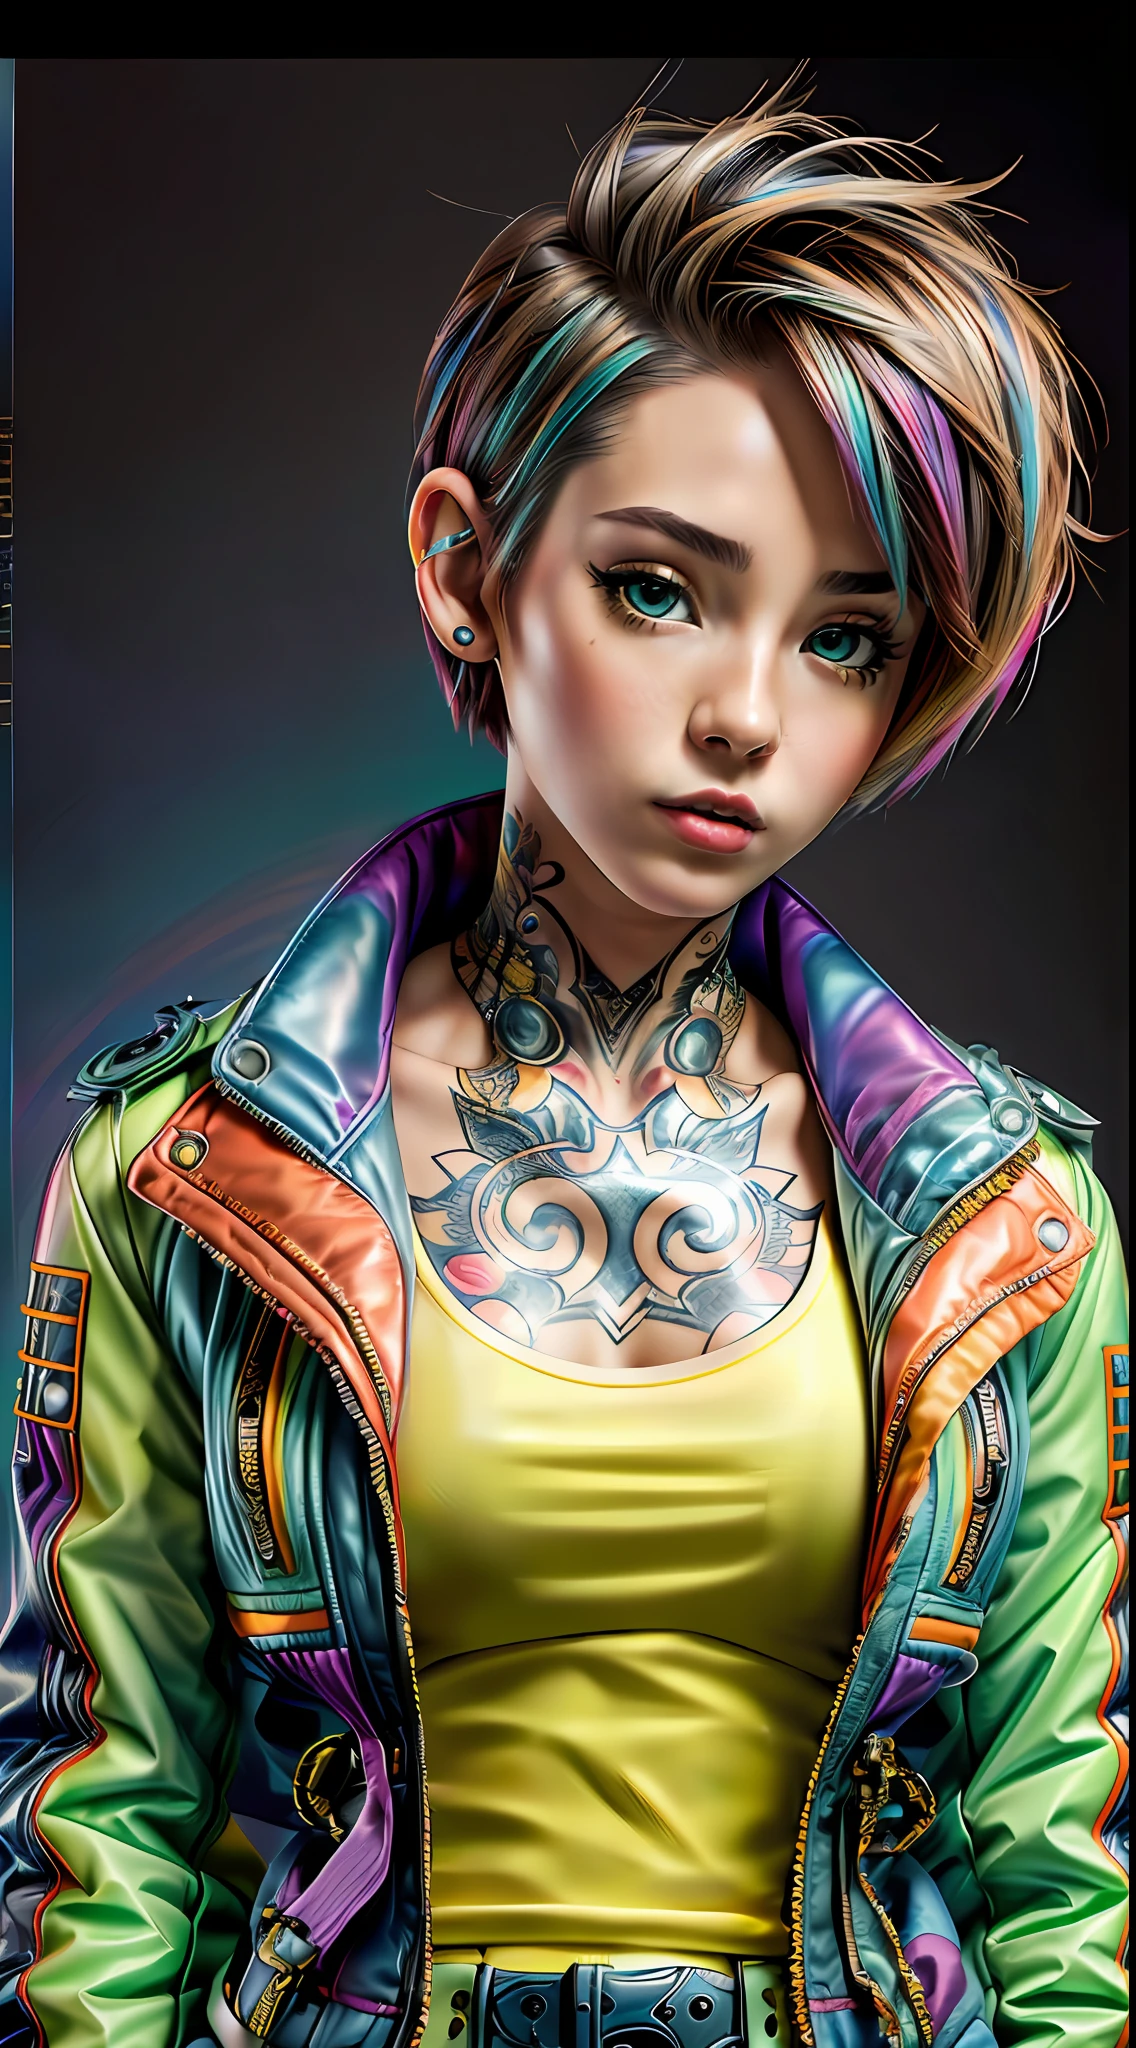 реалистичный,Фото,35 мм,Кинематографический(1 женщина в суперпуховой куртке Balenciaga с короткими волосами,татуировки на шее)красочный фон графит,ультра острый